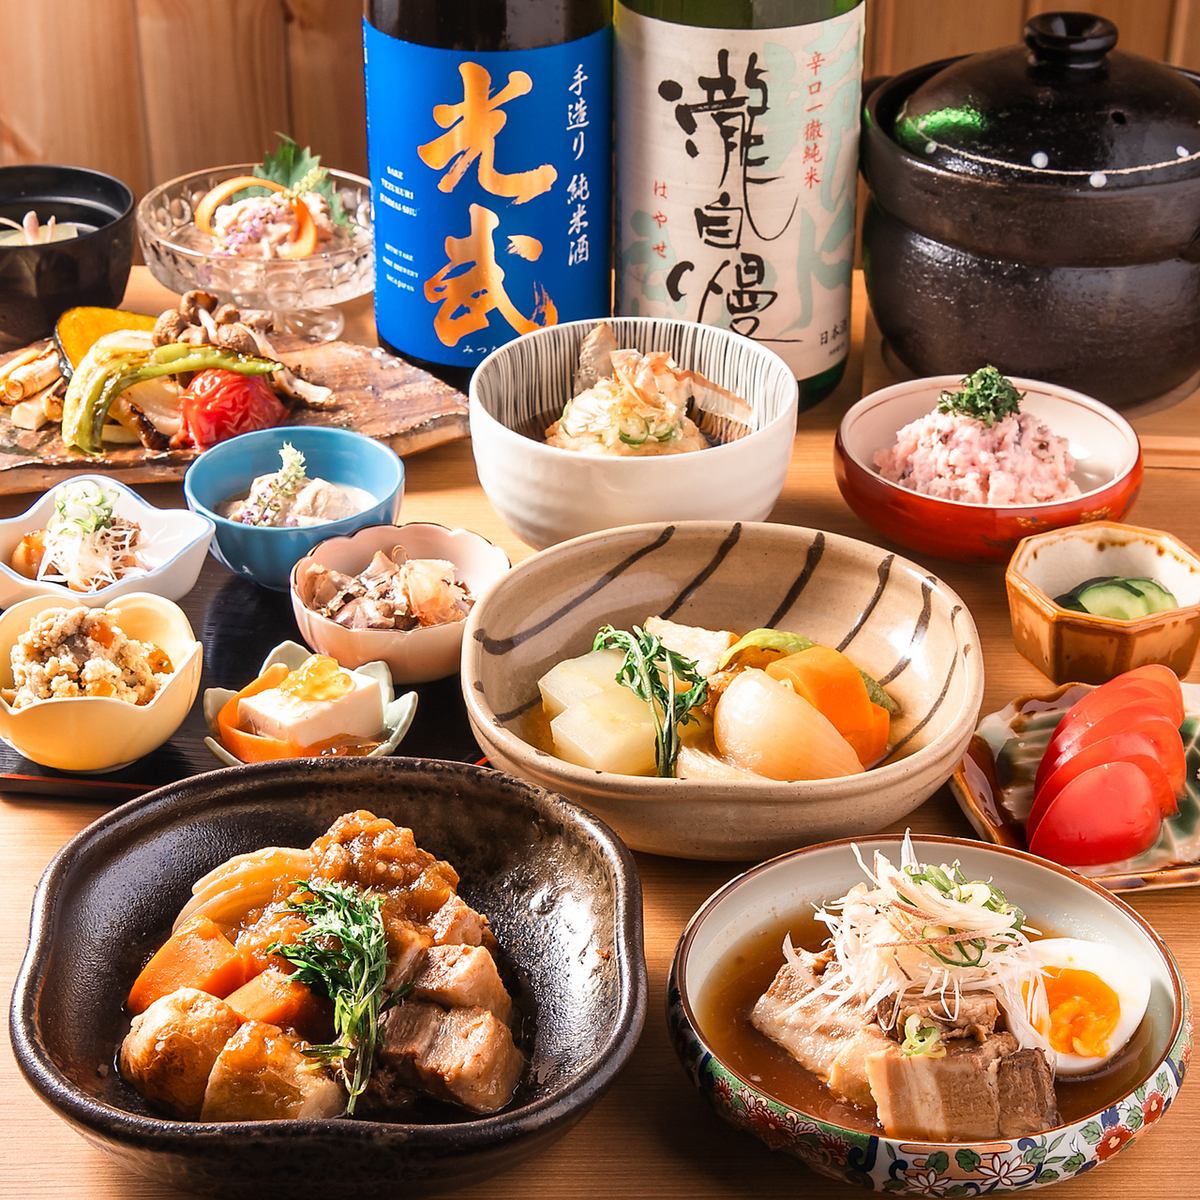 您想在轻松的日式餐厅享用饮品吗？